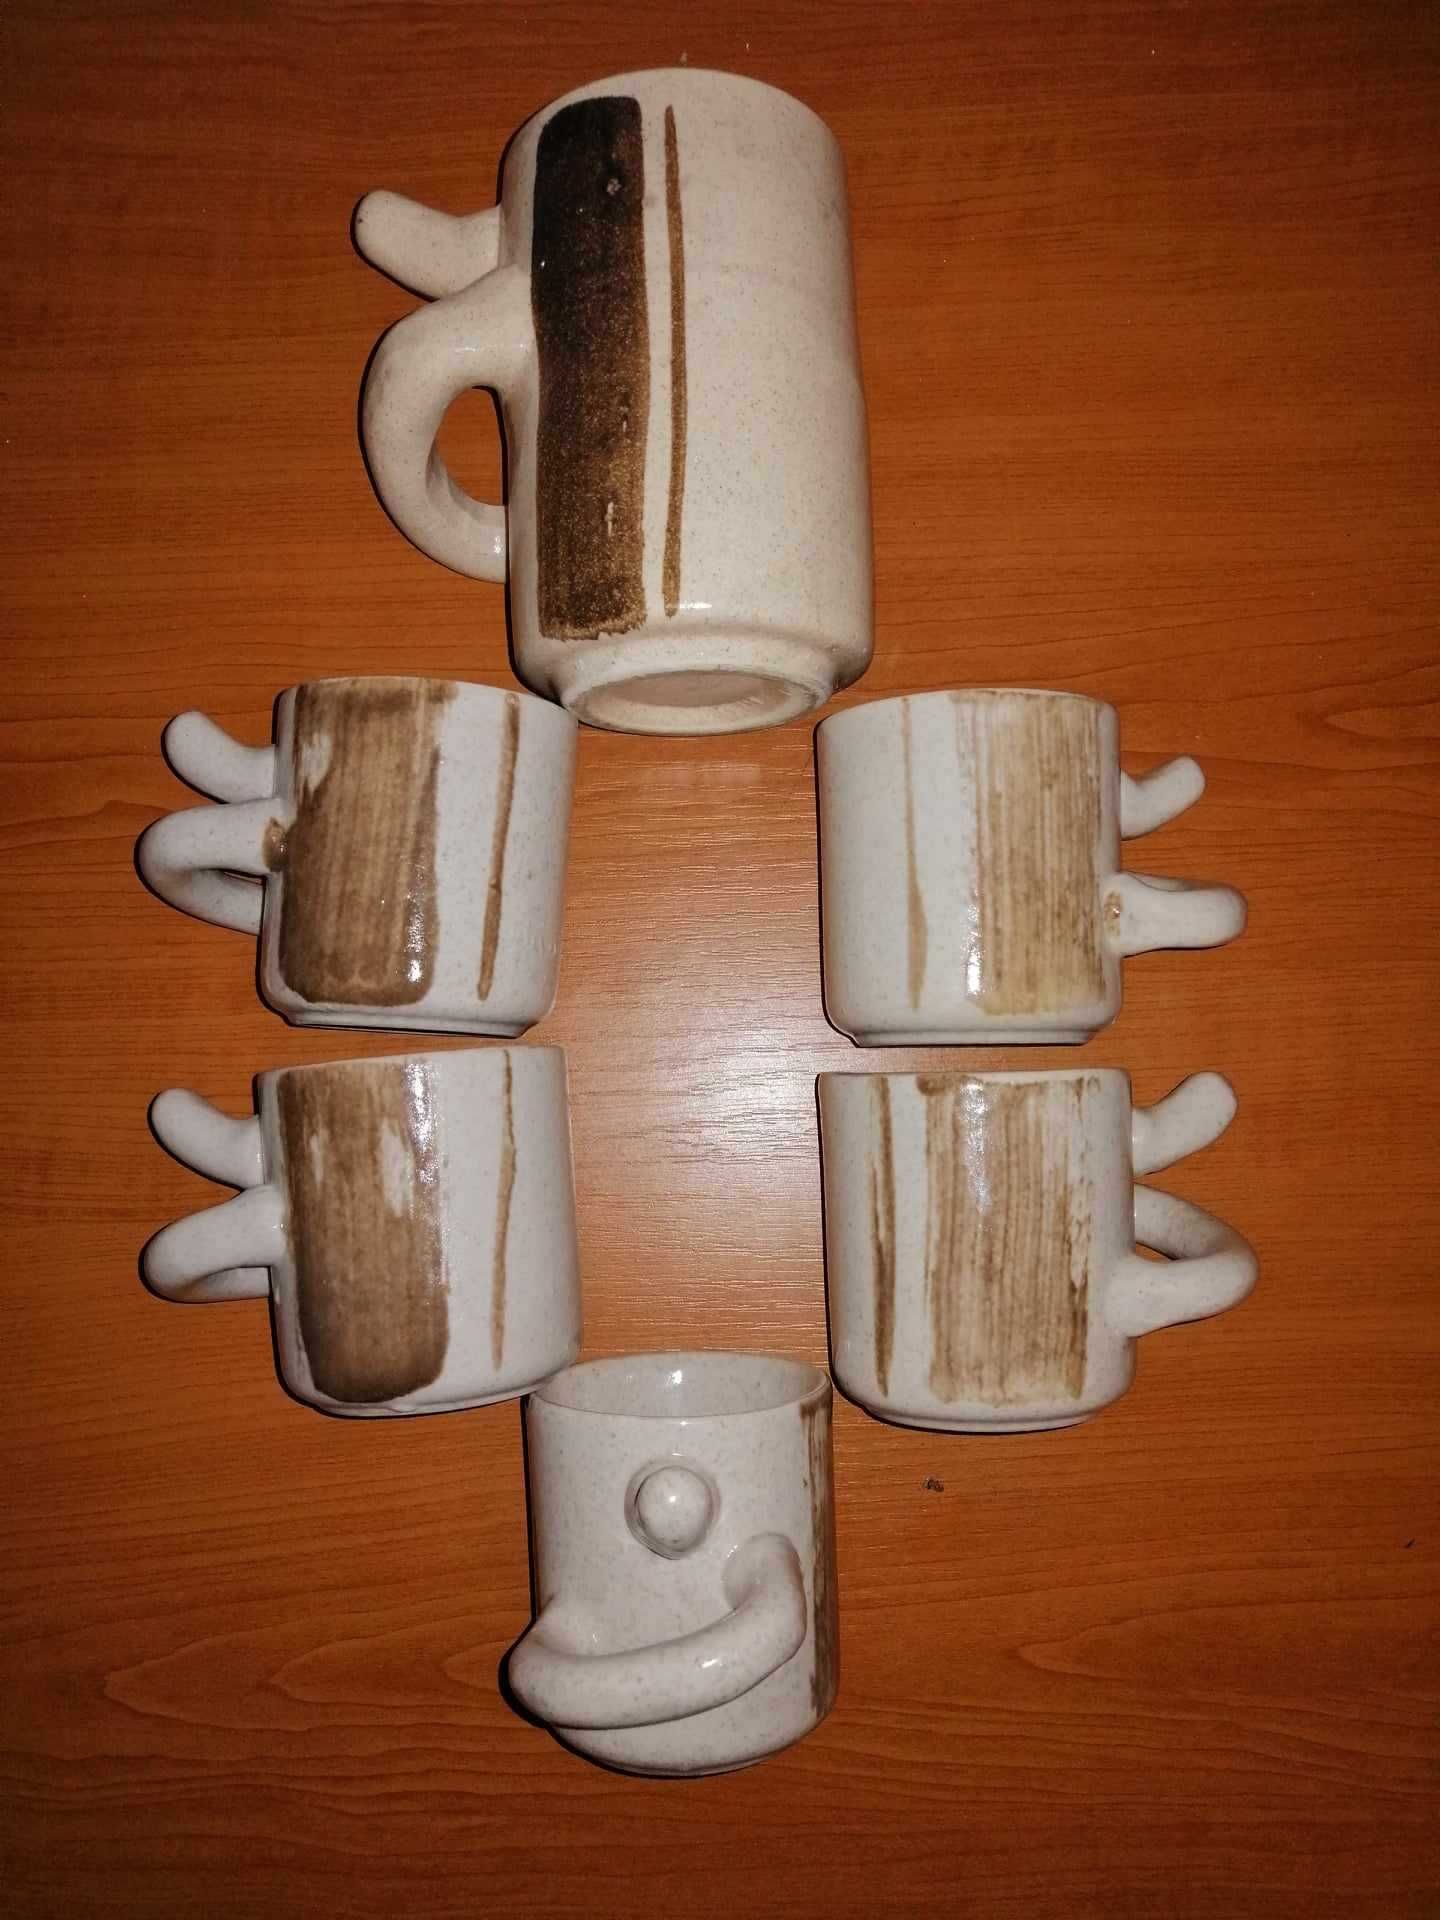 6x ceasca halba ceramica Pollas Design maner maimuta nas gura